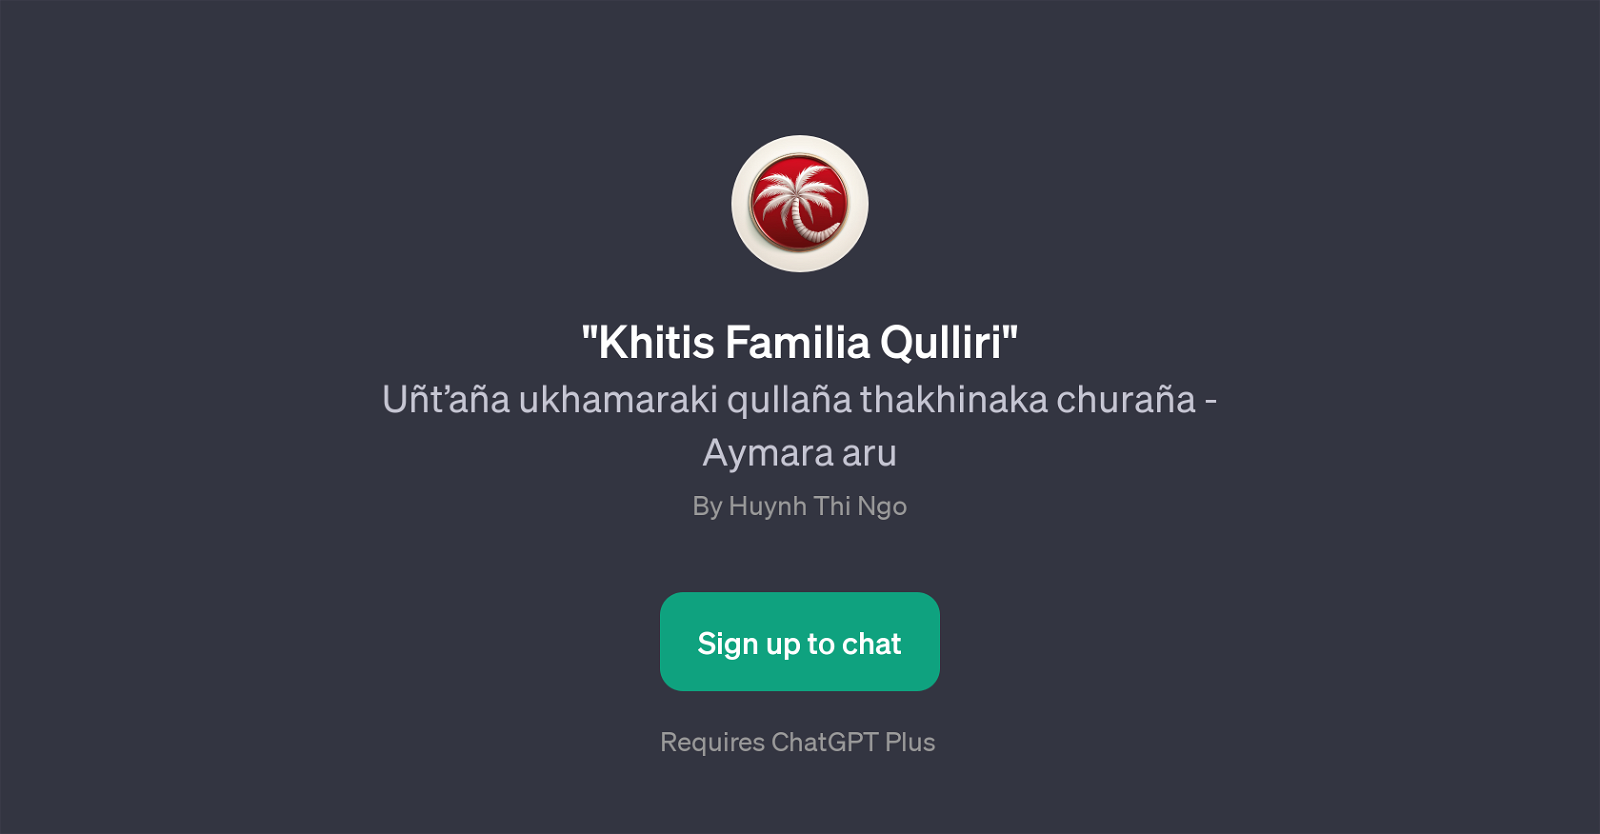 Khitis Familia Qulliri website